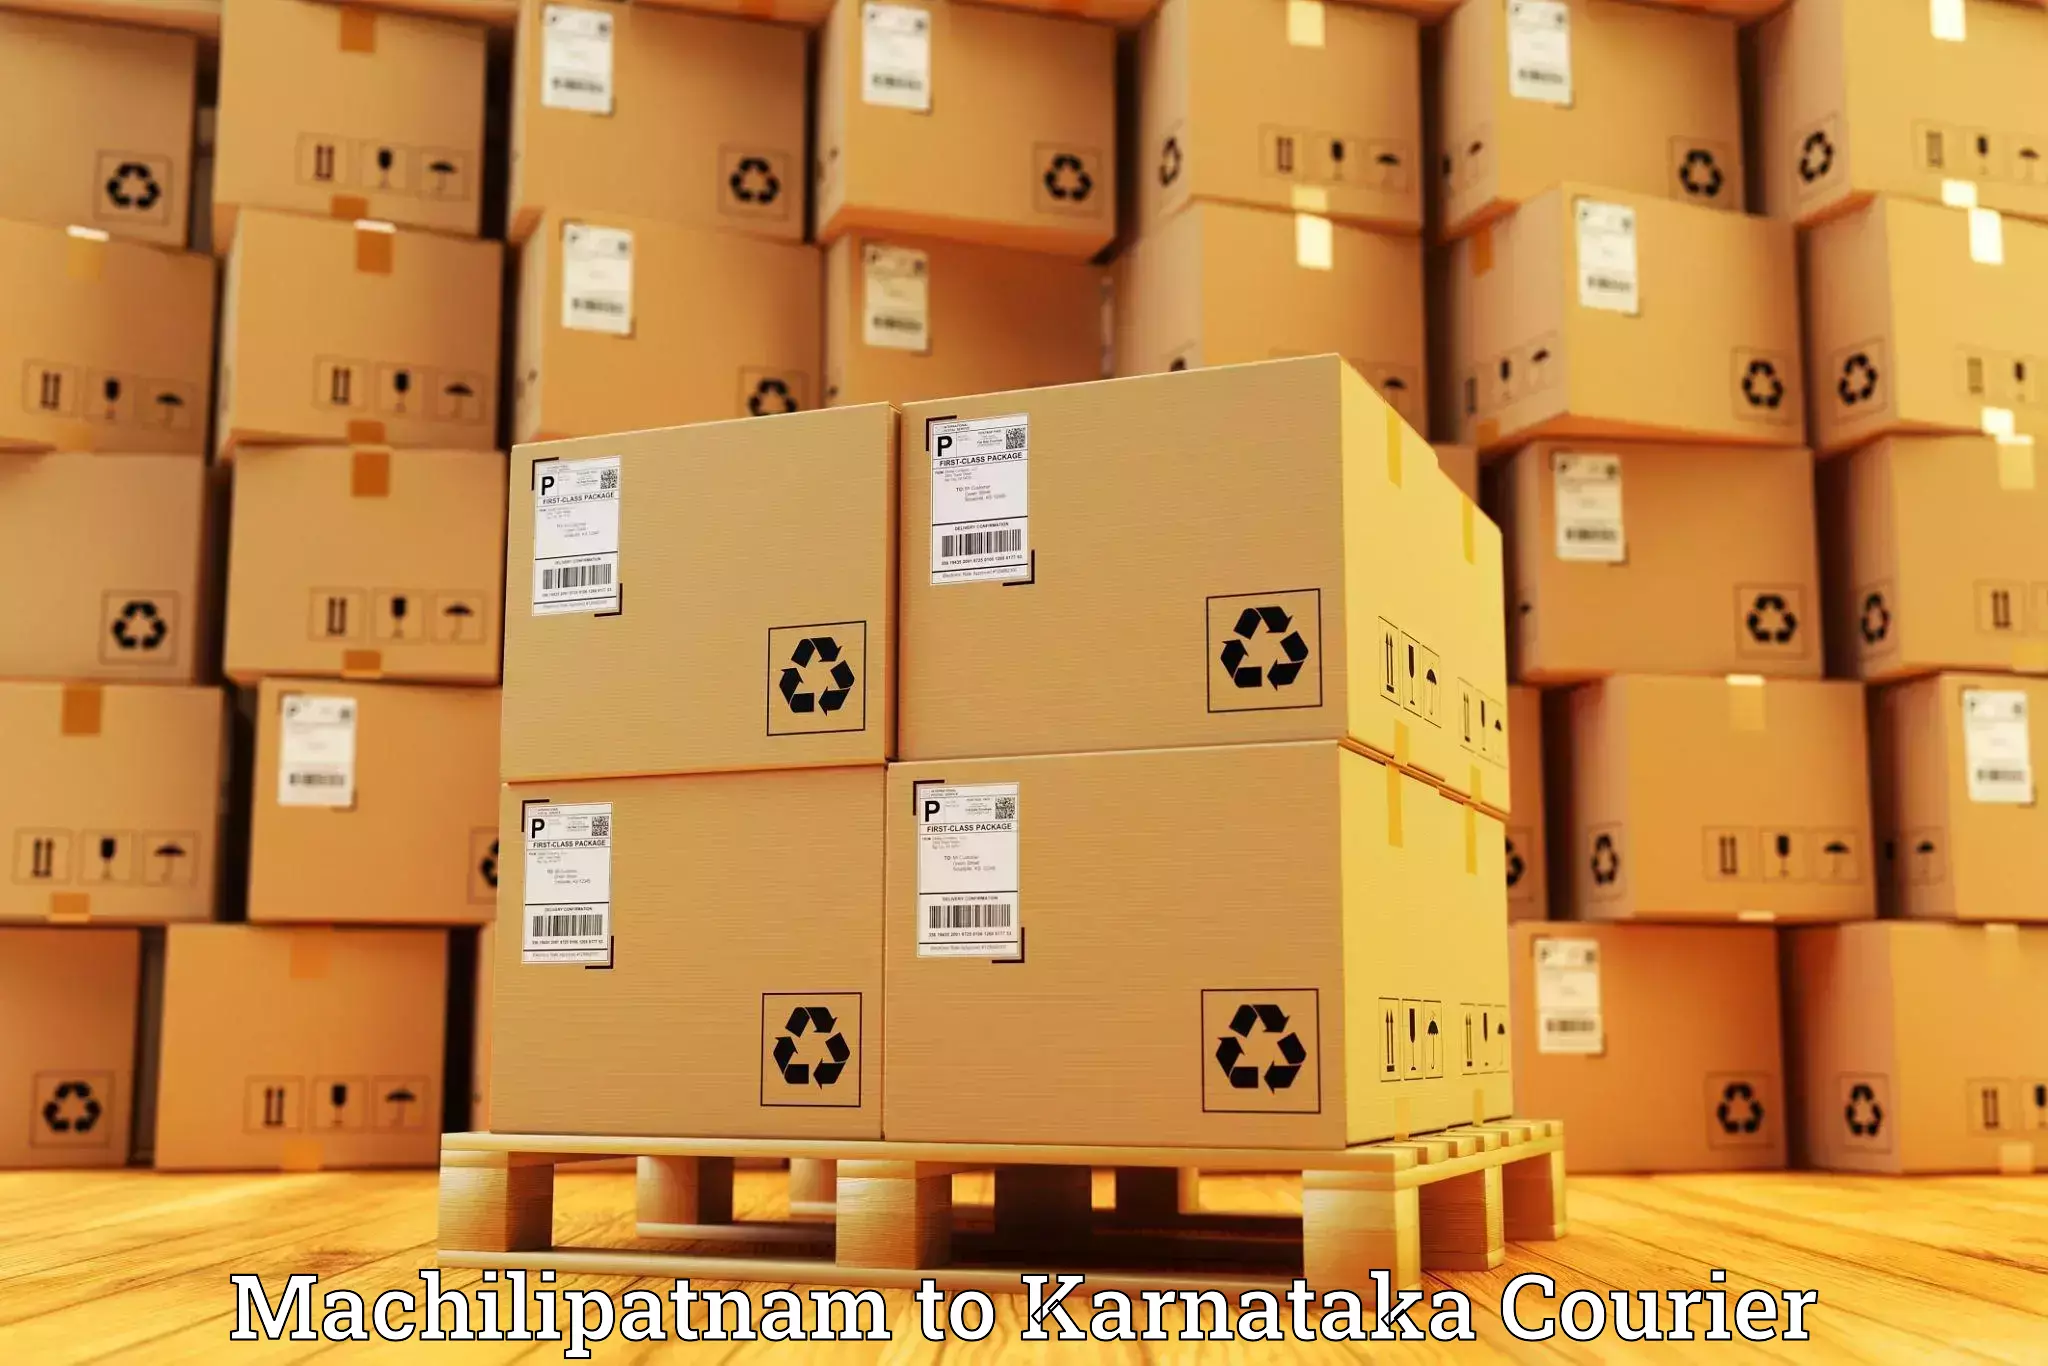 Global shipping networks Machilipatnam to Mudarangady